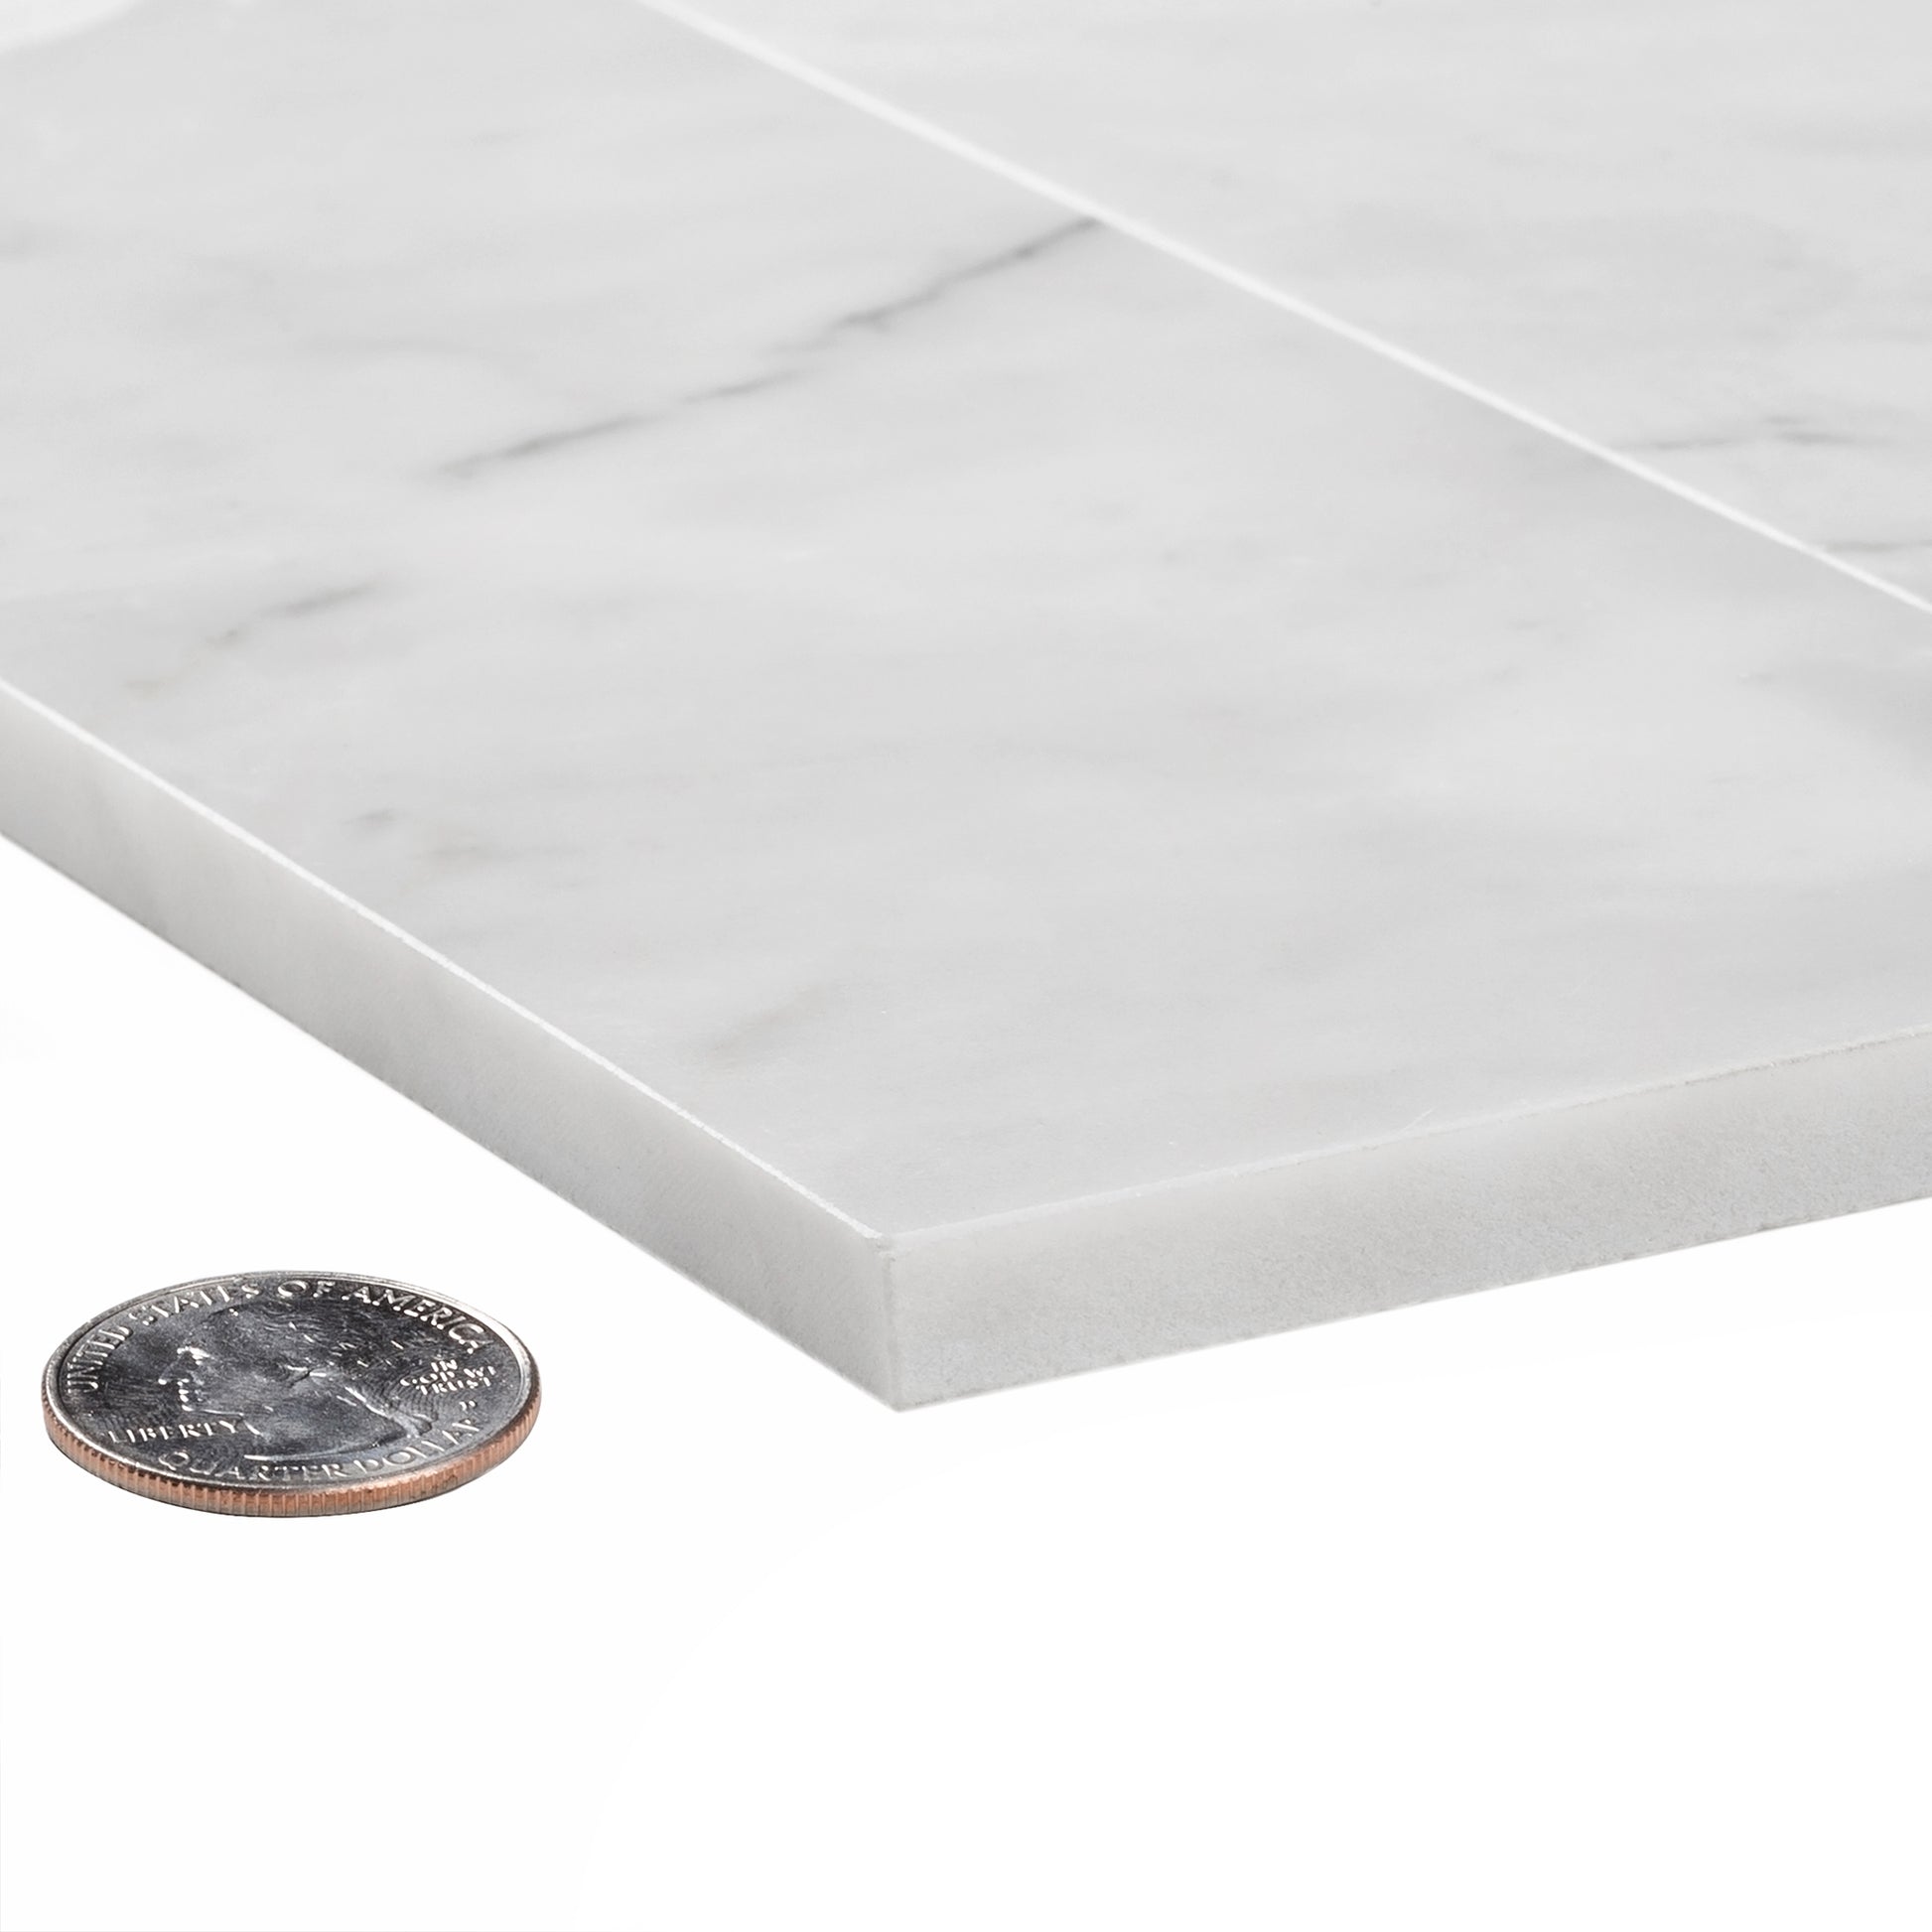 Elegant Gray Veined Marble Tile